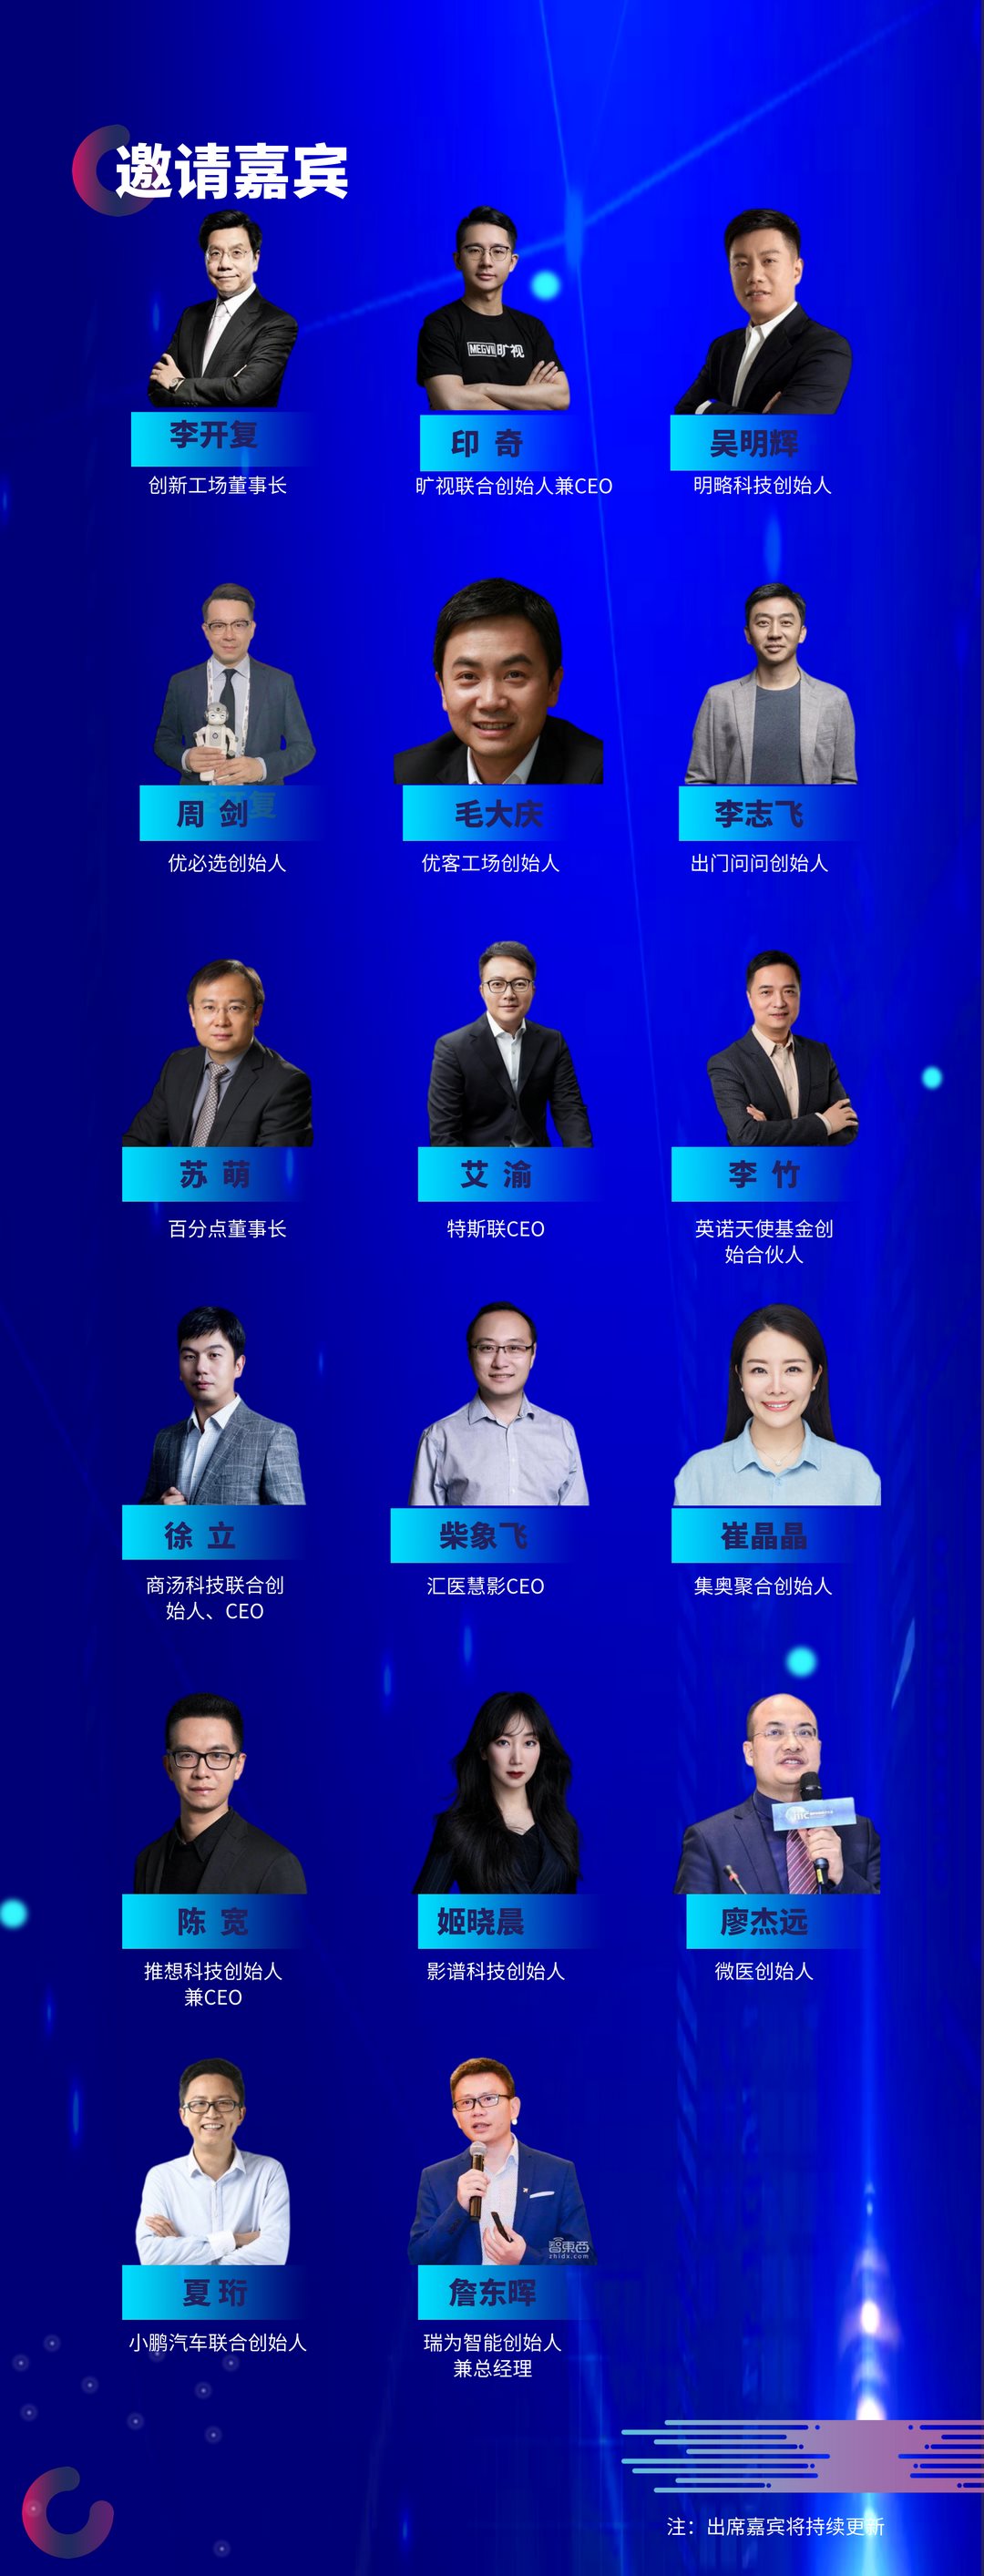 【科创之光】第六届全球青年创新大会暨中国科技创新峰会“金火炬奖”颁奖盛典